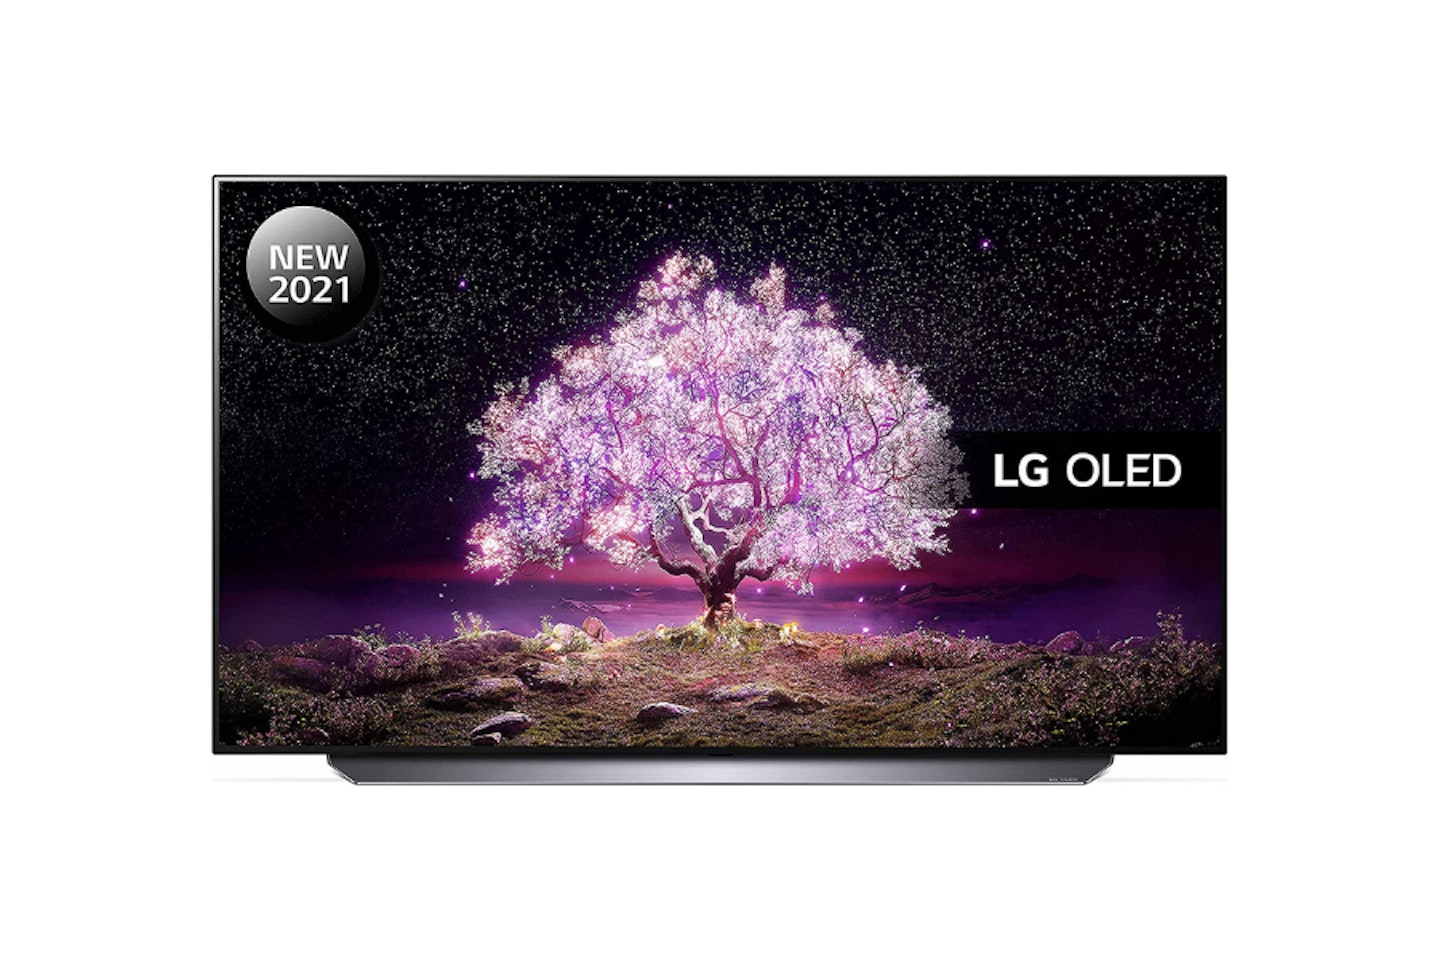 LG OLED55C14LB 55 inch 4K UHD HDR Smart OLED TV (2021 Model)